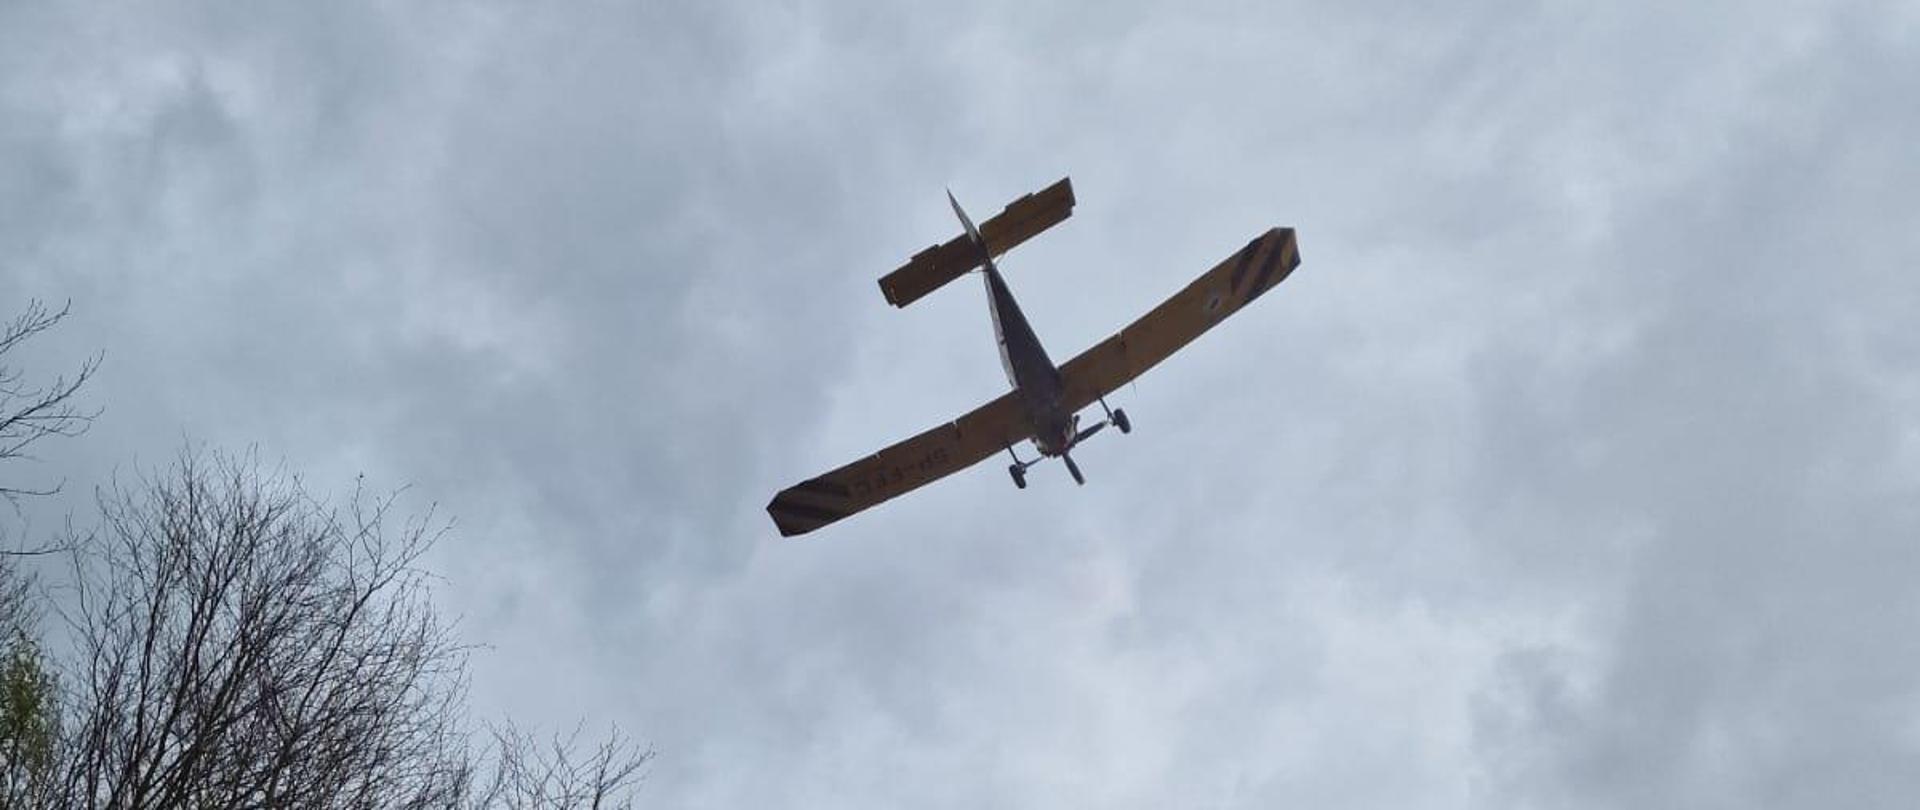 Na zdjęciu nadlatujący samolot gaśniczy Dromader, który dokona zrzutu wody na palący się las.